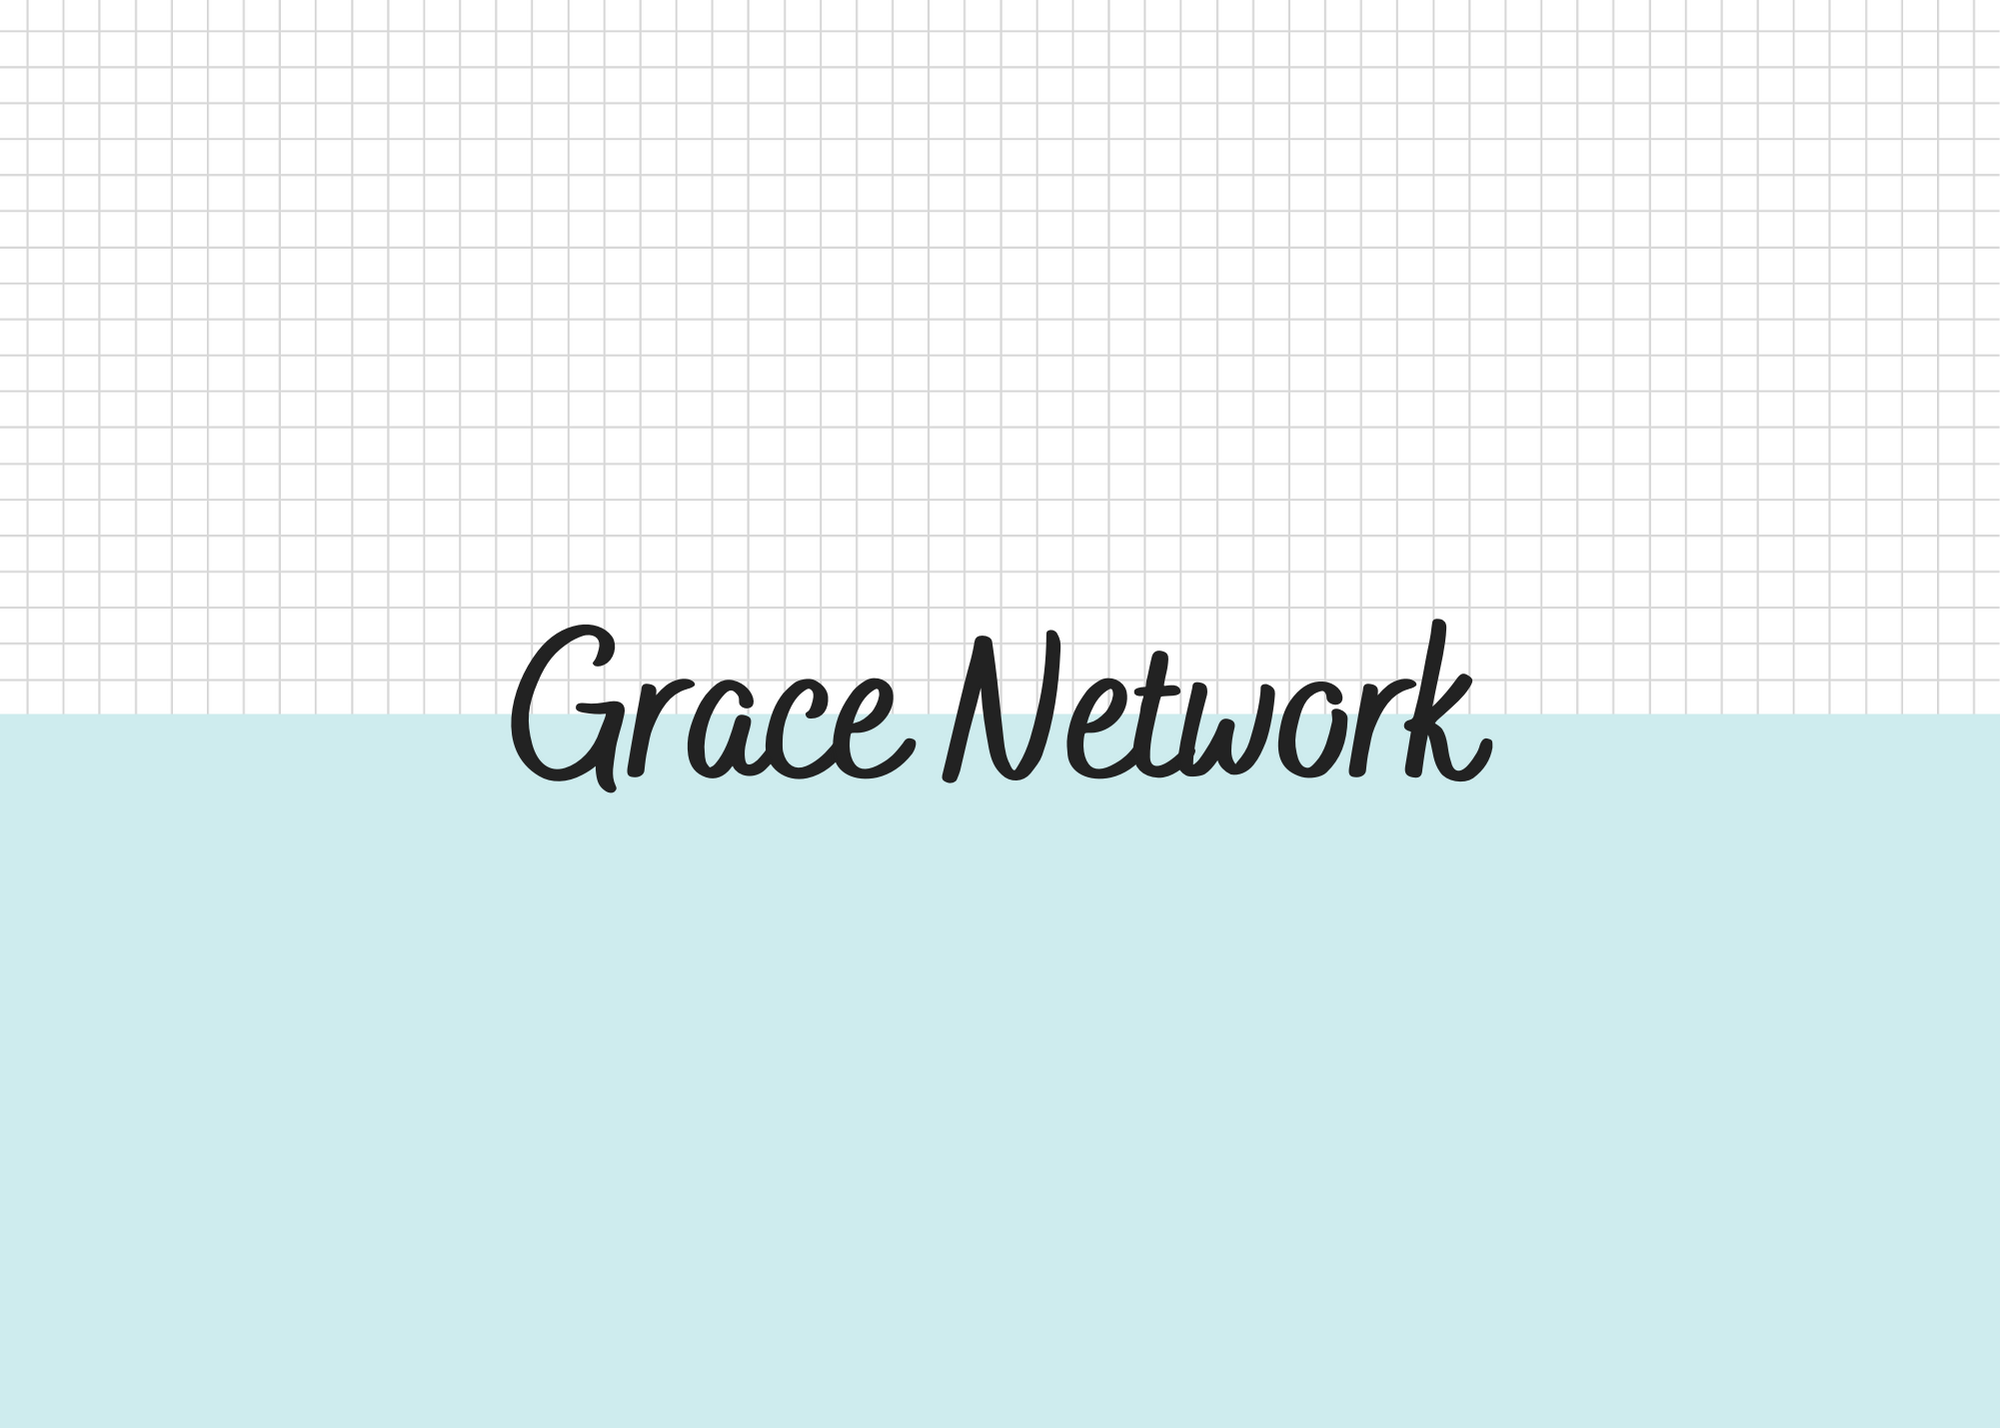 Grace Network